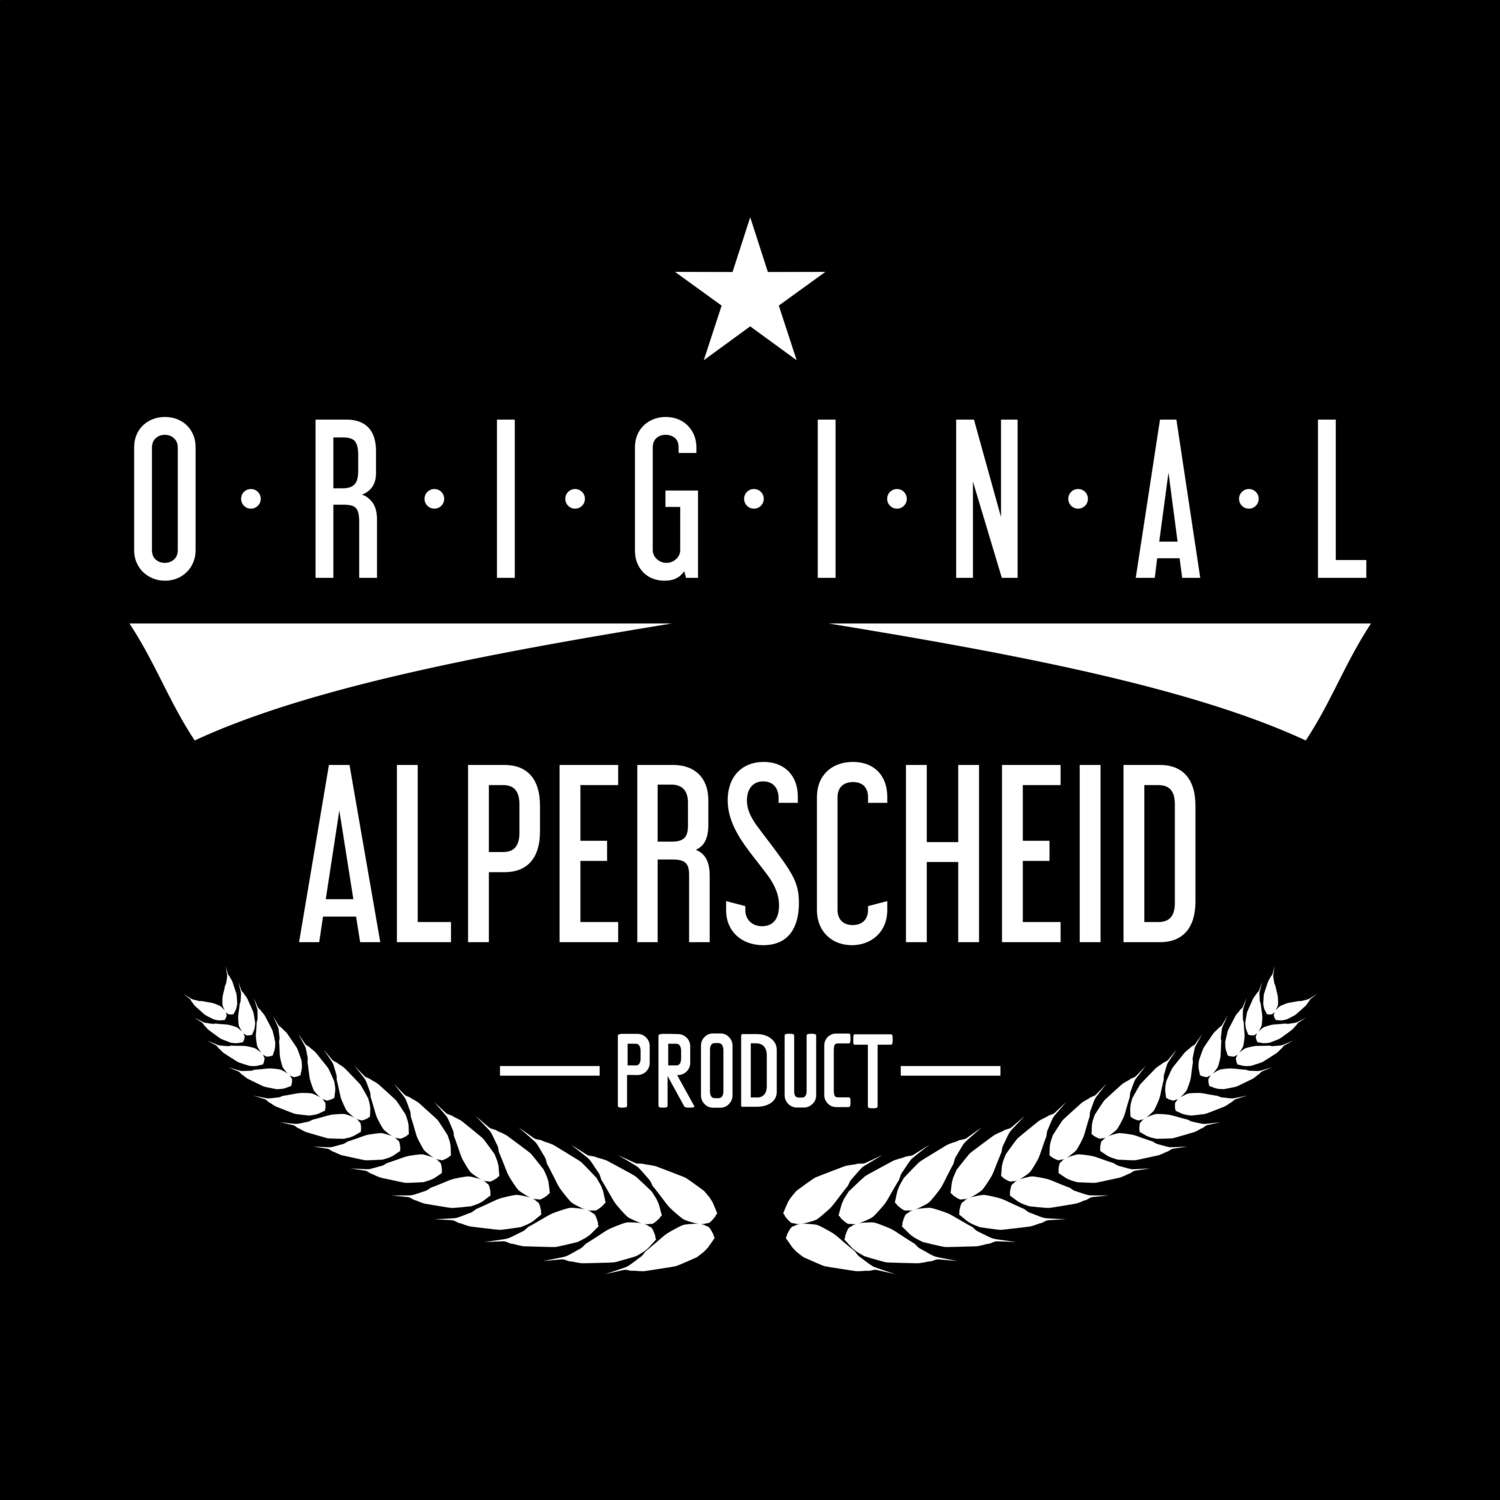 Alperscheid T-Shirt »Original Product«